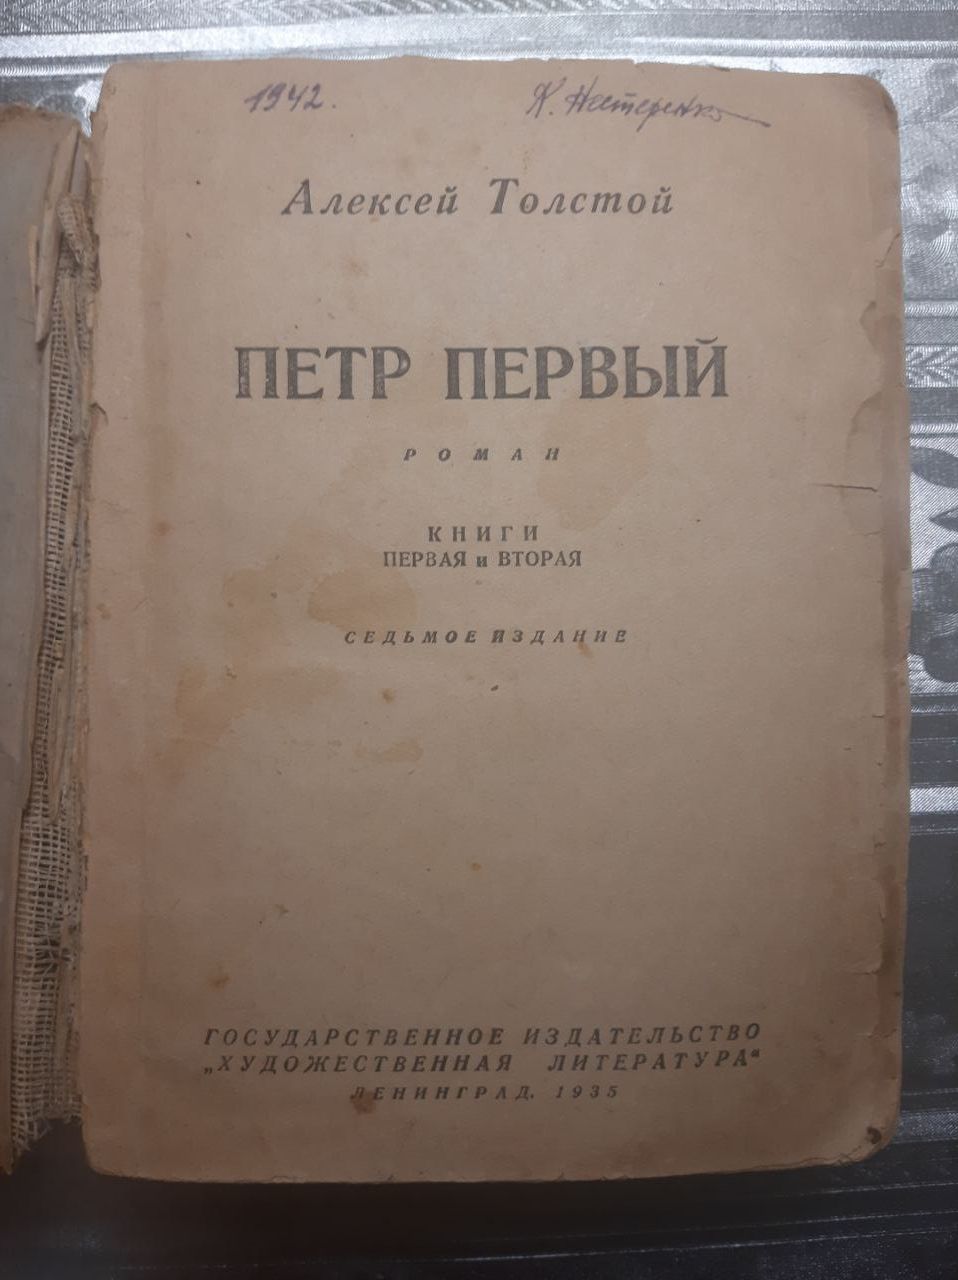 Книга Алексей Толстой "Петр Первый" 1935 год